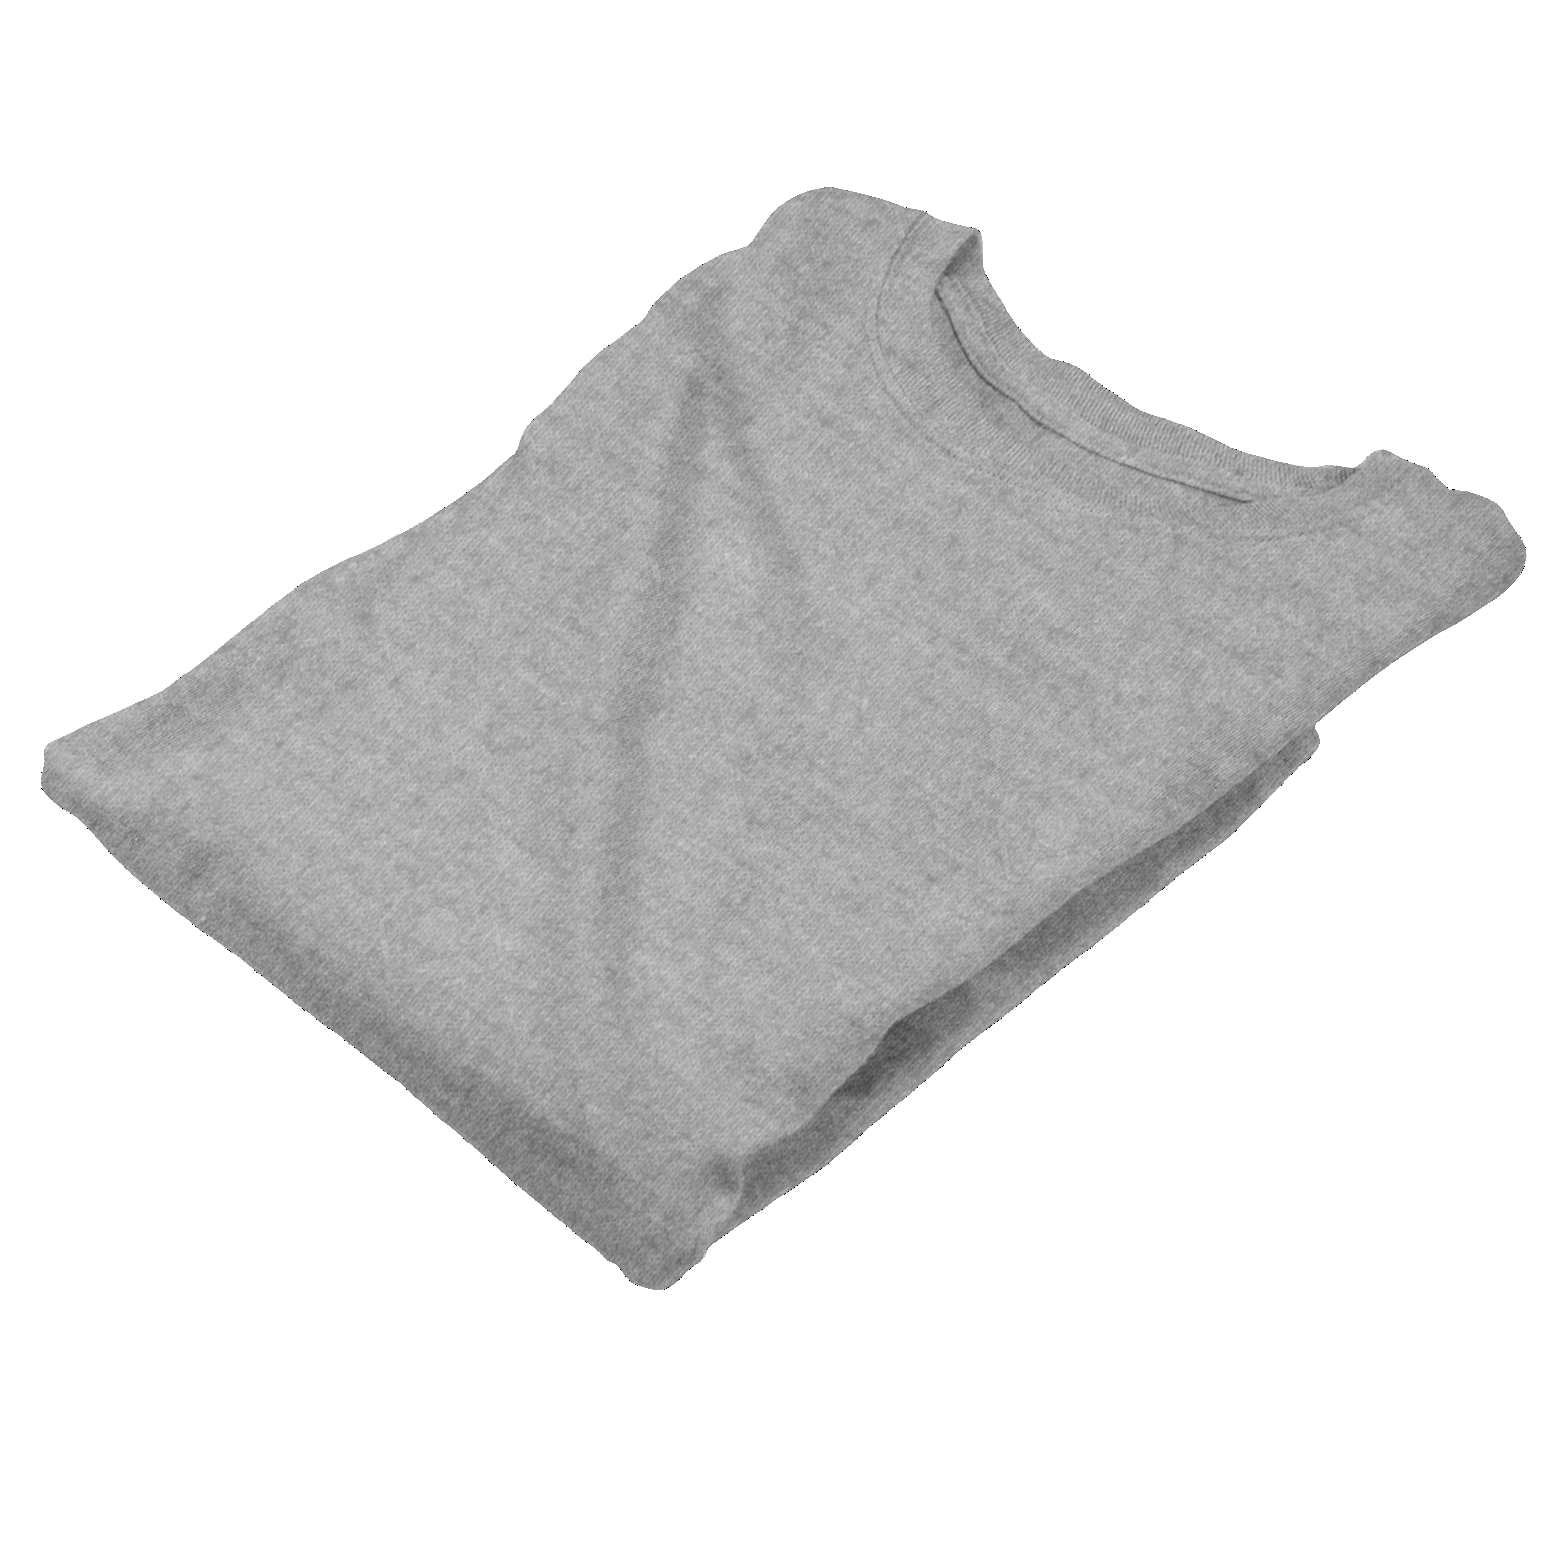 grey melange full sleeves top or women the banyan tee buy in india long sleeve tops full sleeve tops